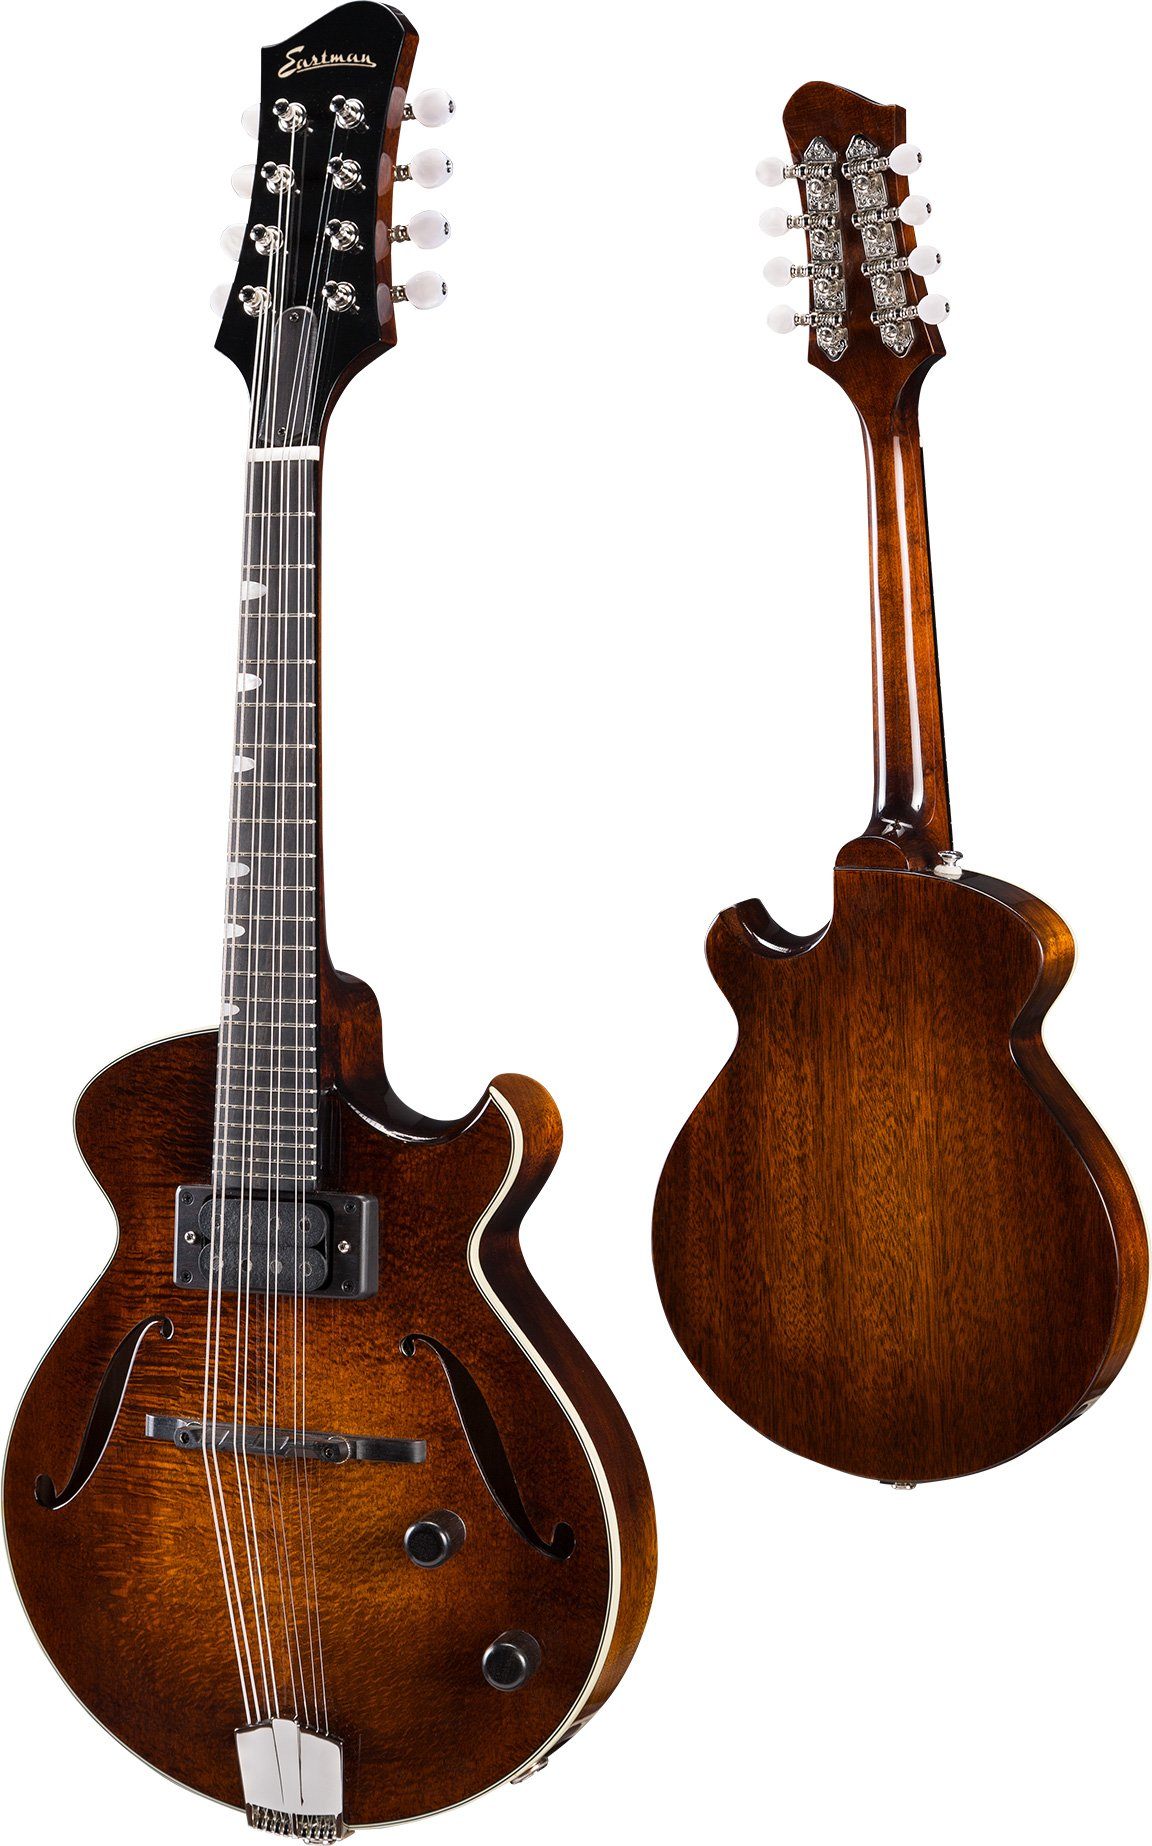 Eastman El Ray ER-M Electric Mandolin, Mandolin for sale at Richards Guitars.